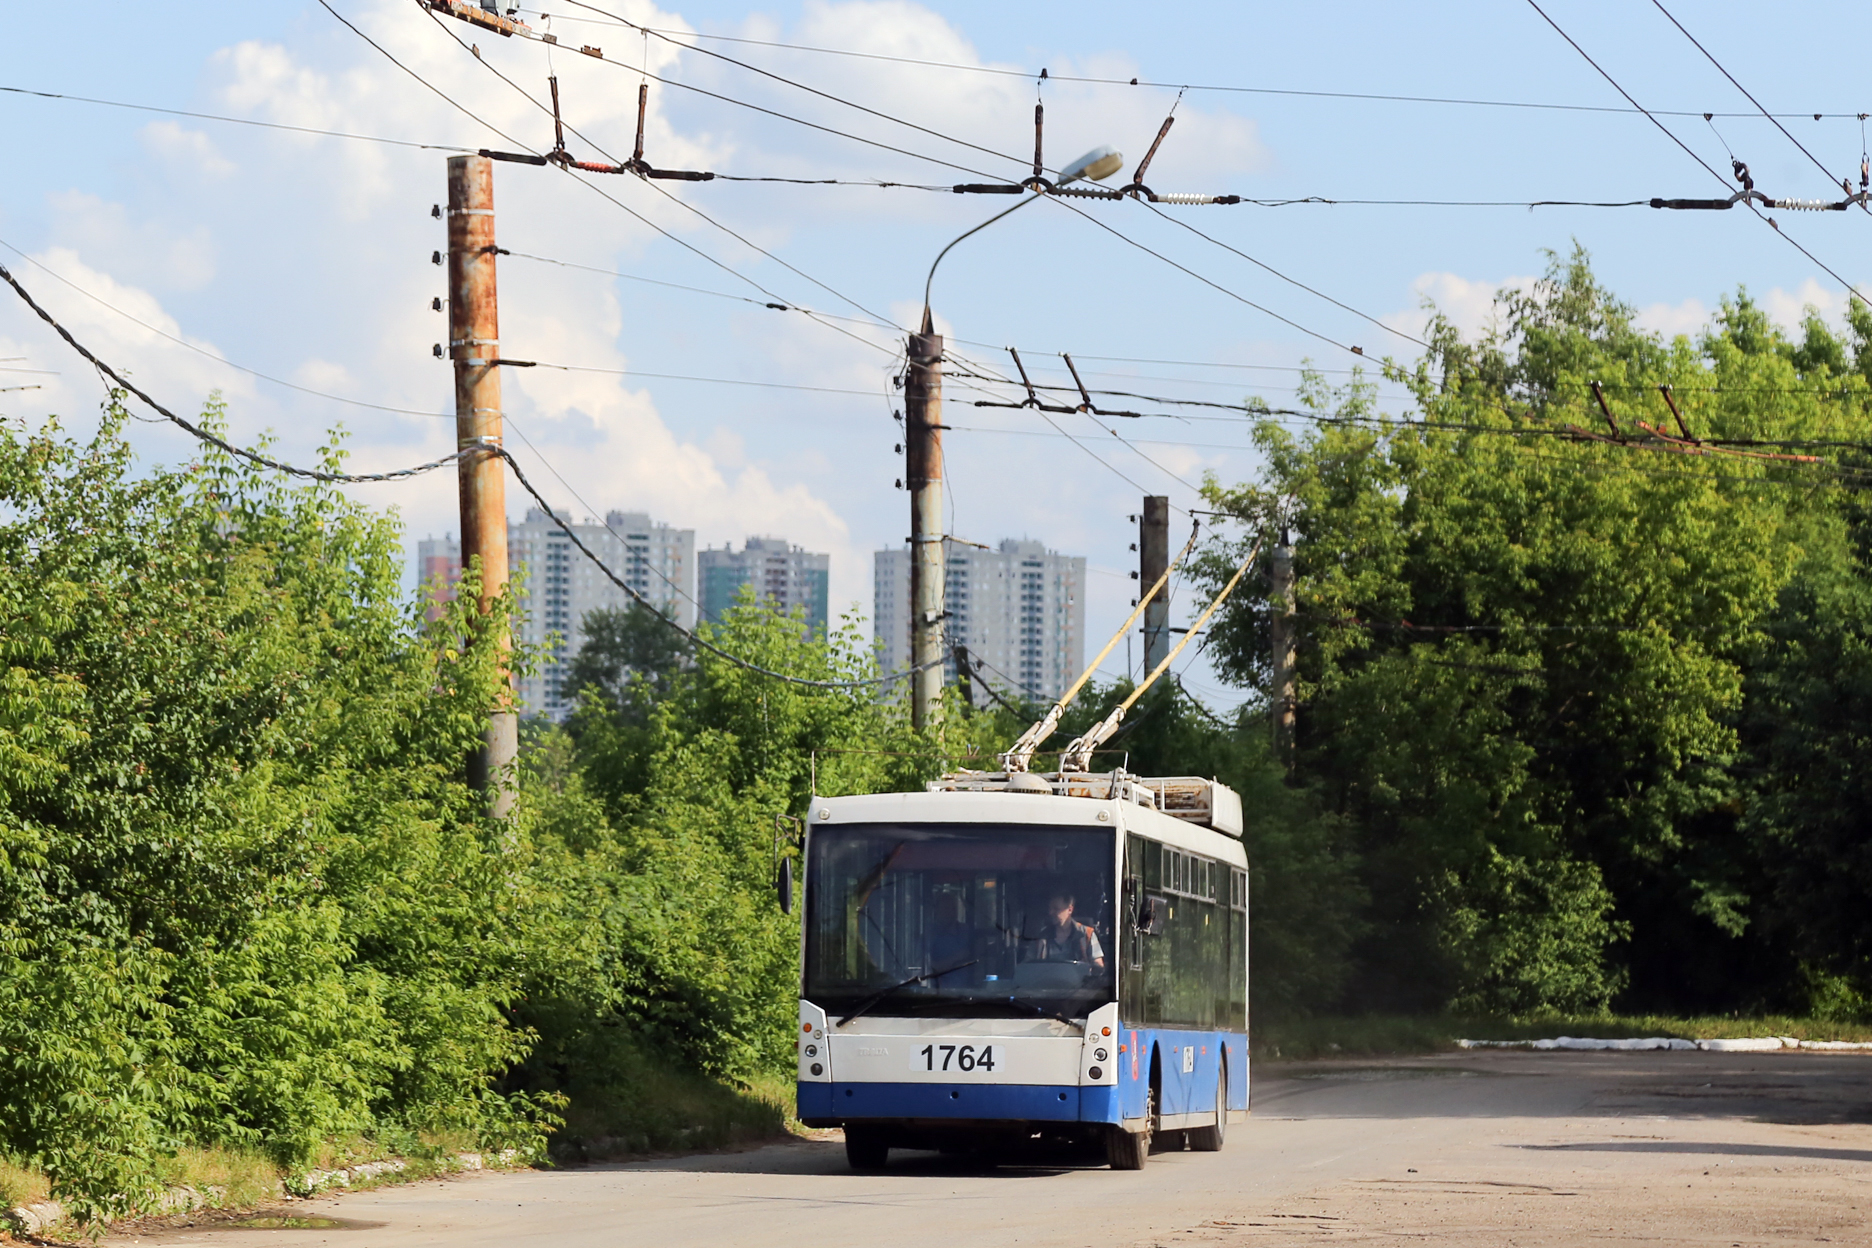 Партия из 26 московских троллейбусов доставлена в Нижний Новгород - фото 1